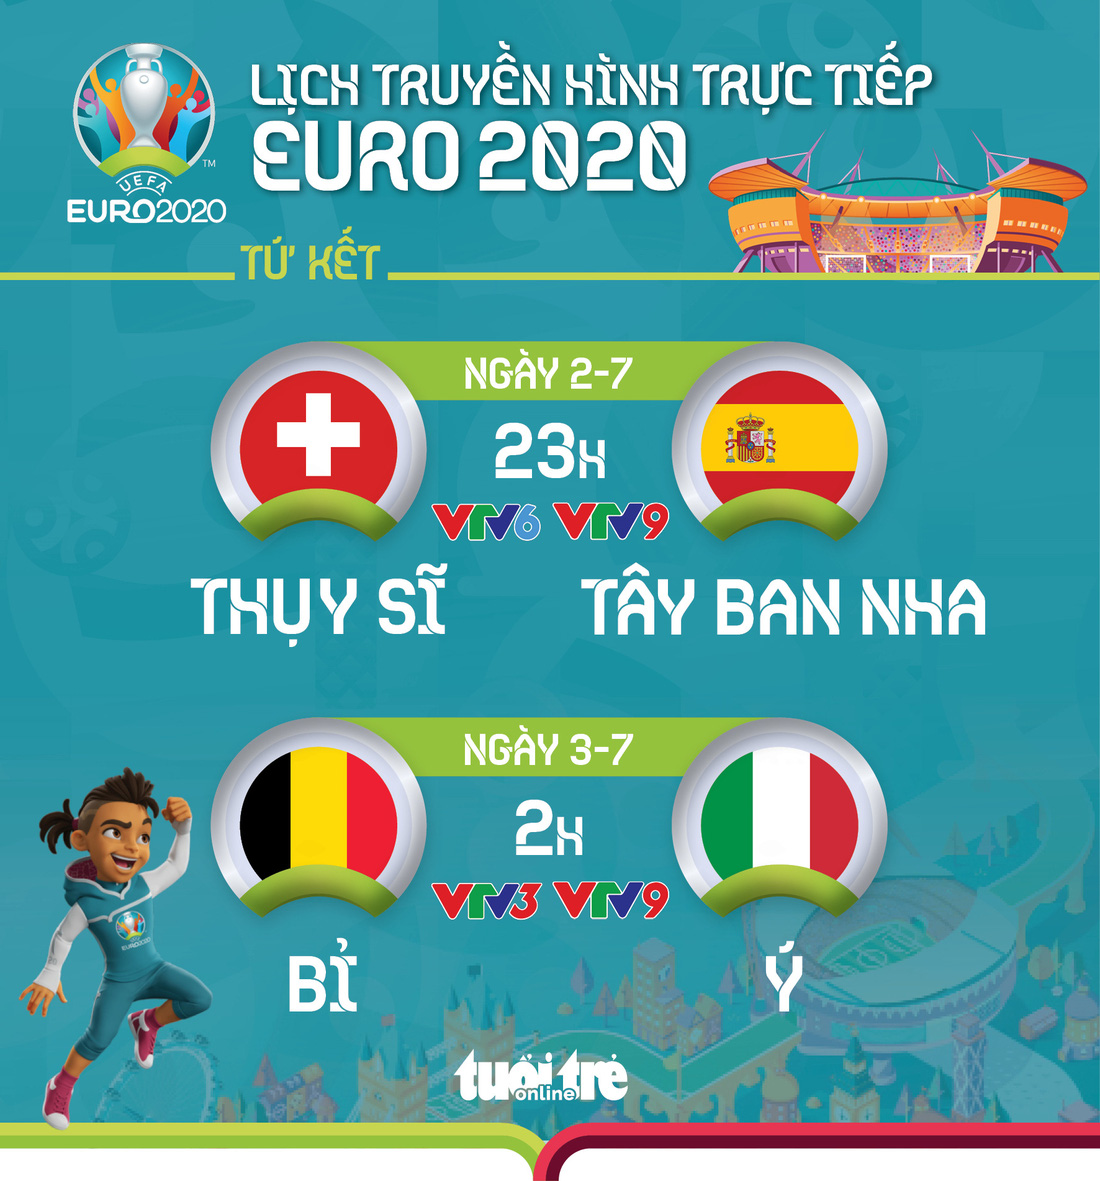 Lịch trực tiếp Euro 2020: Thụy Sĩ - Tây Ban Nha, Bỉ - Ý - Ảnh 1.